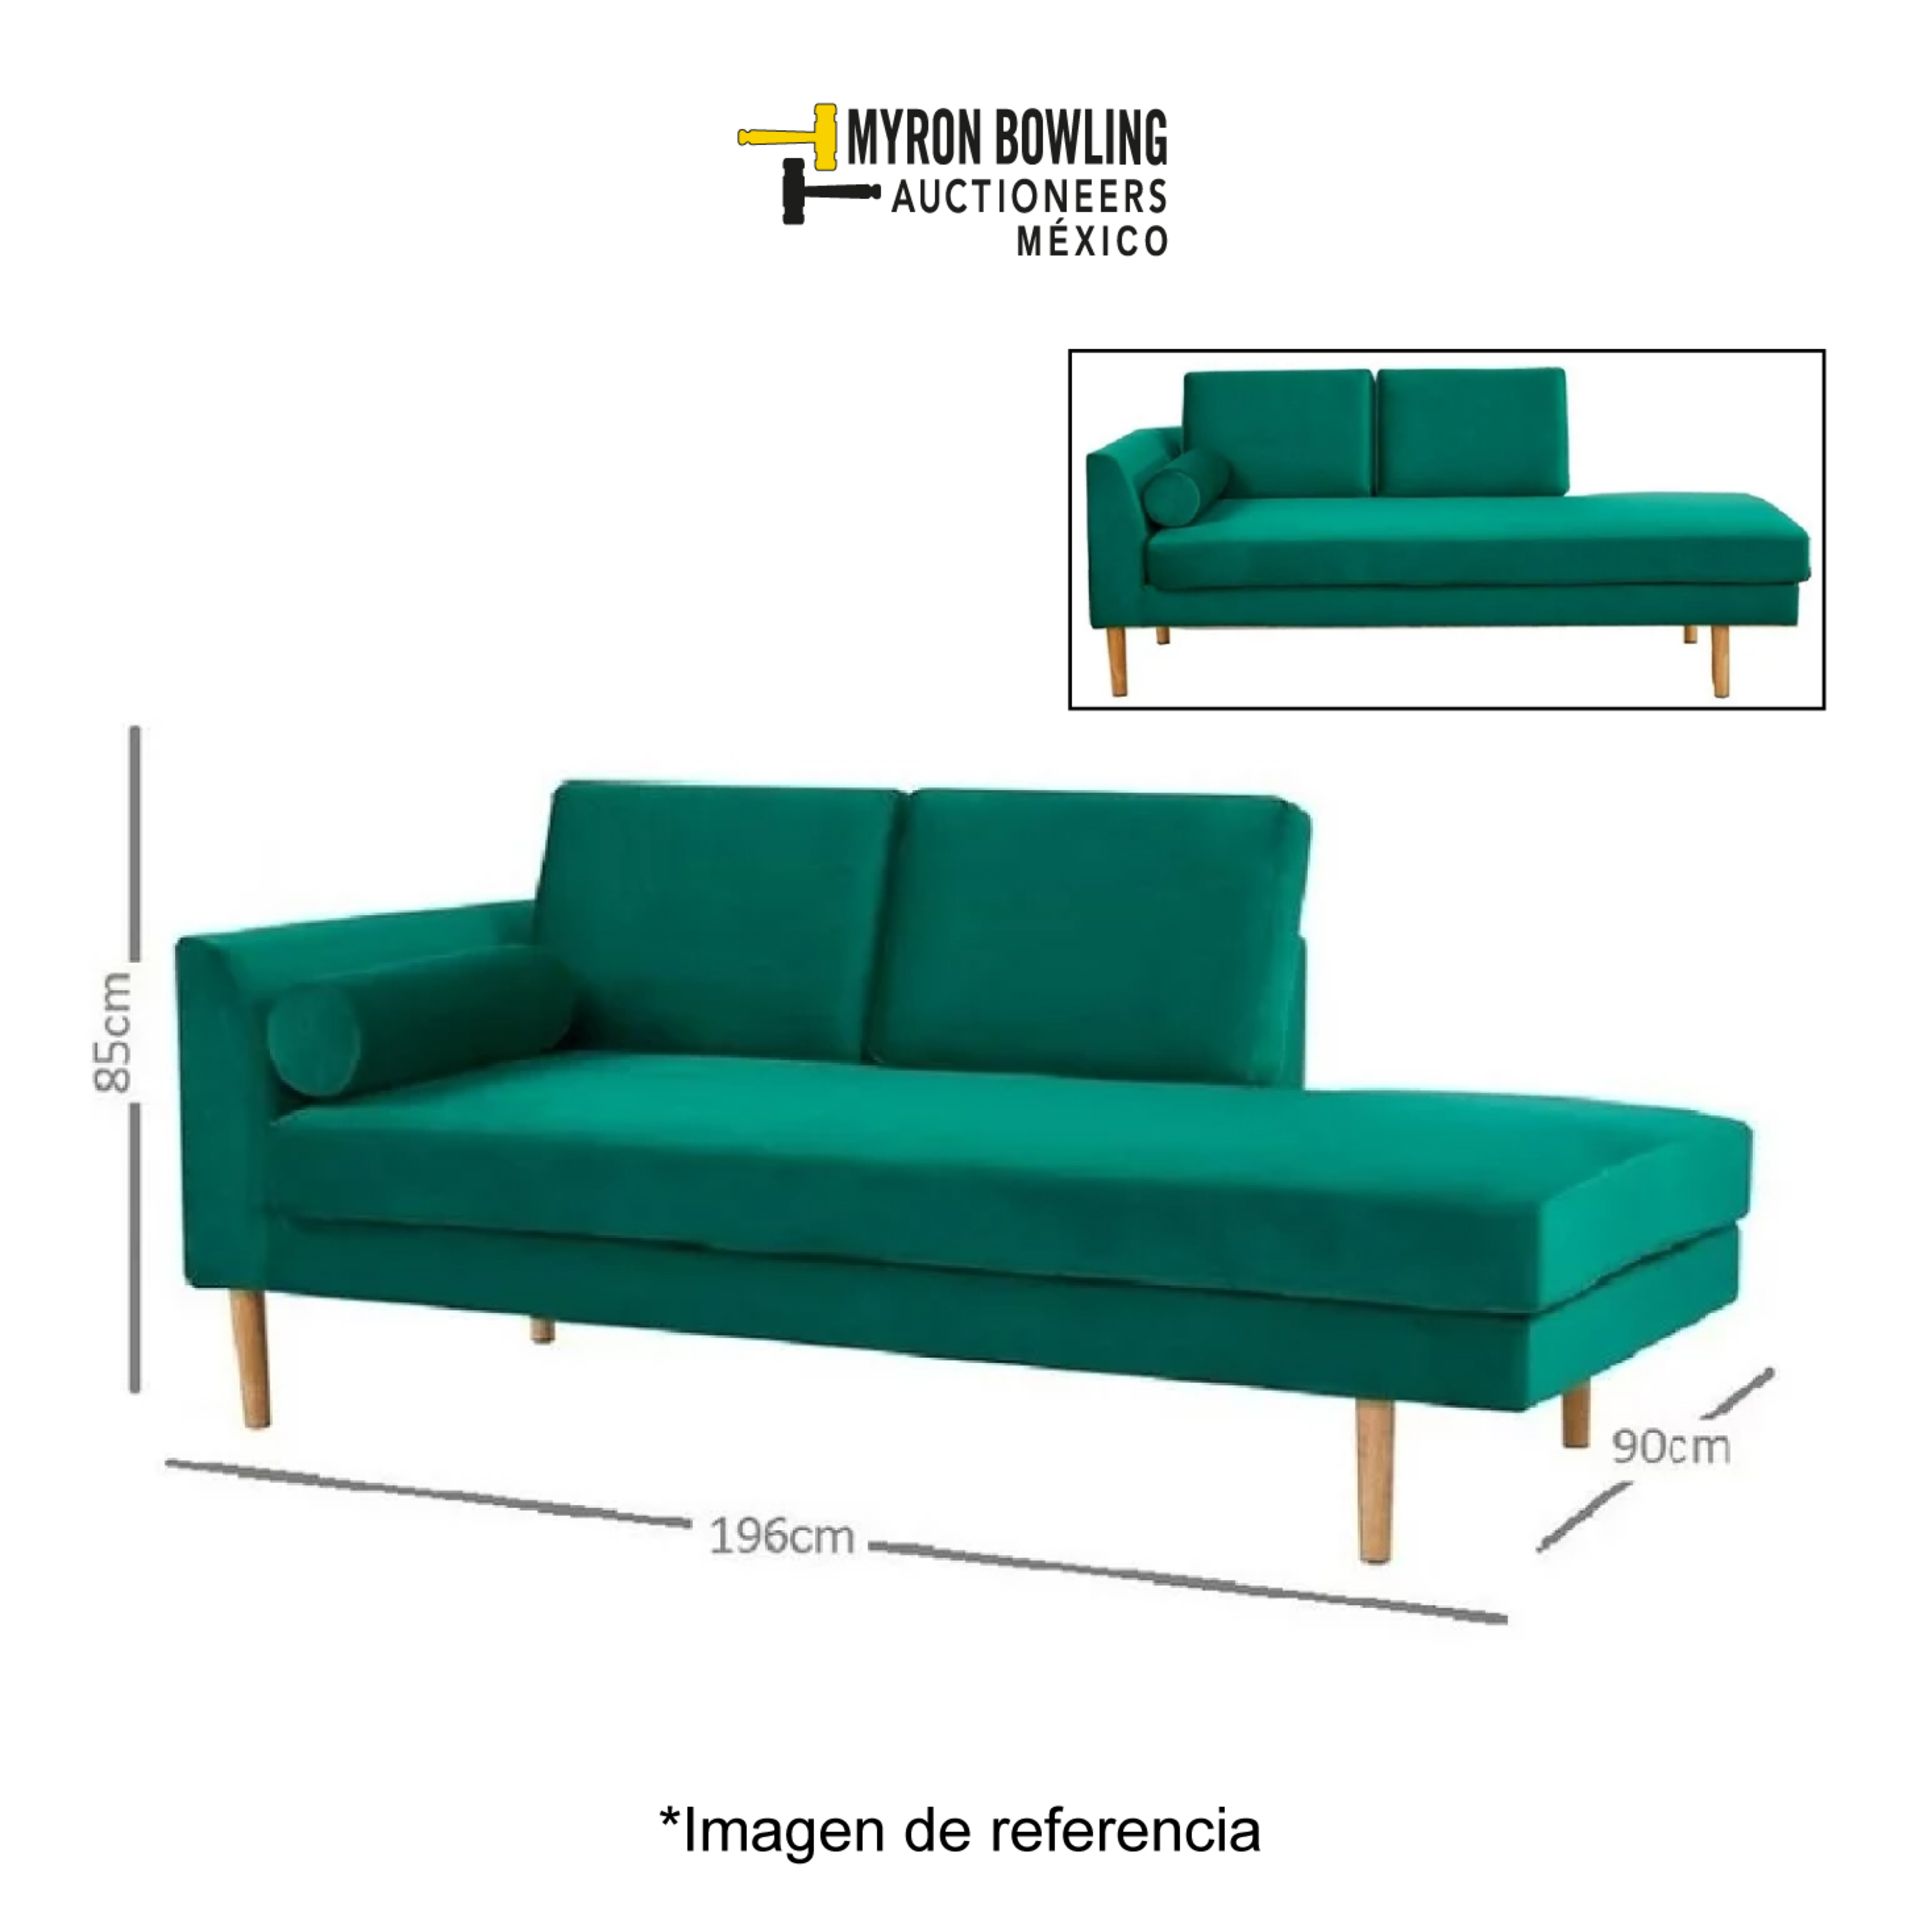 Lote de 2 artículos contiene: 1 diva reclinable verde; 1 sofá cama Marca HOMETRENDS (Equipo de devo